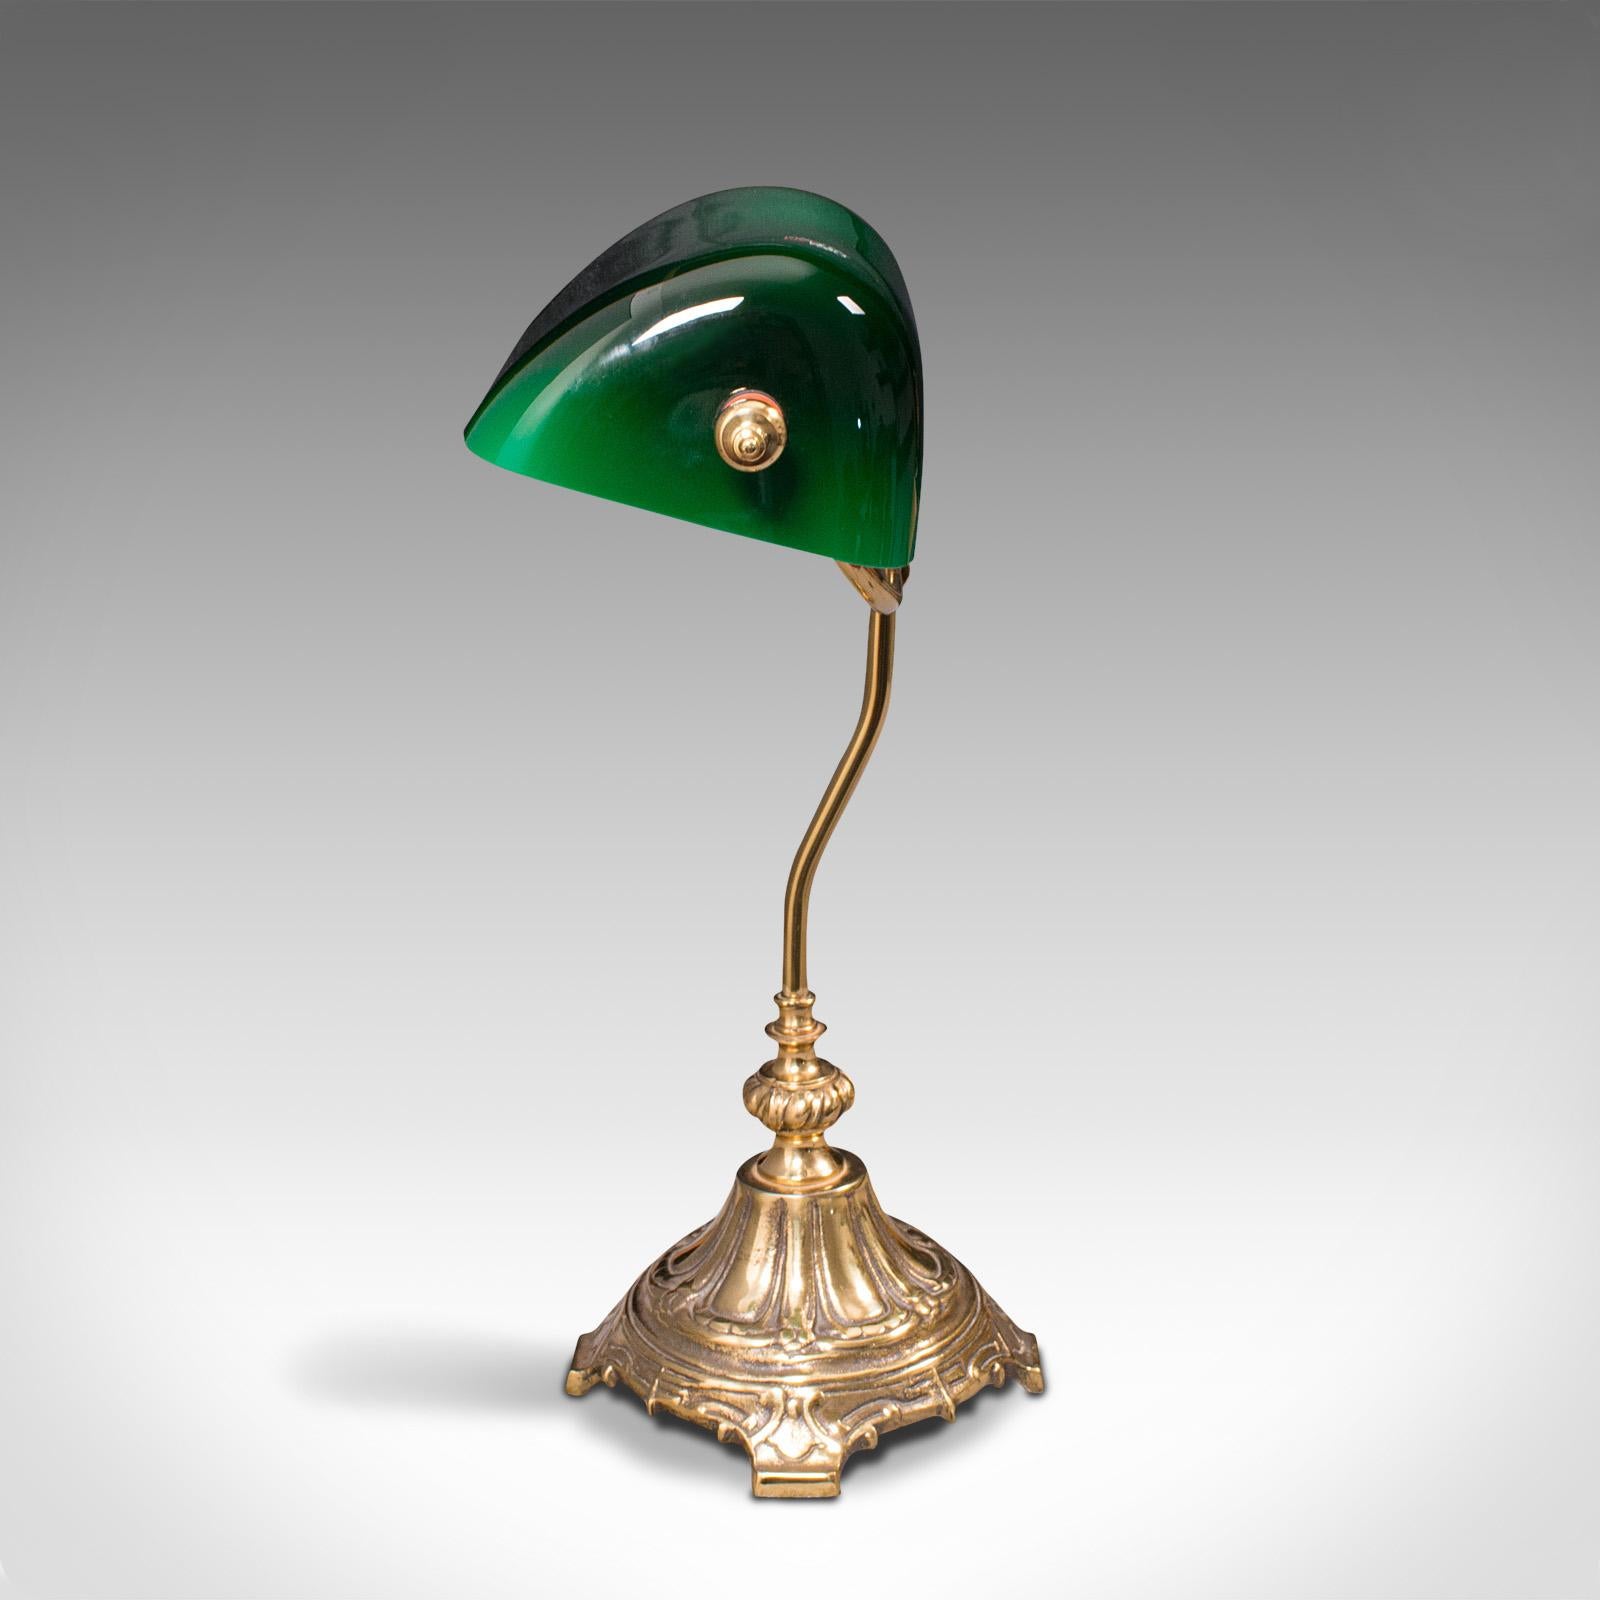 British Vintage Barrister's Lamp, English, Adjustable, Banker's Desk Light, Mid Century